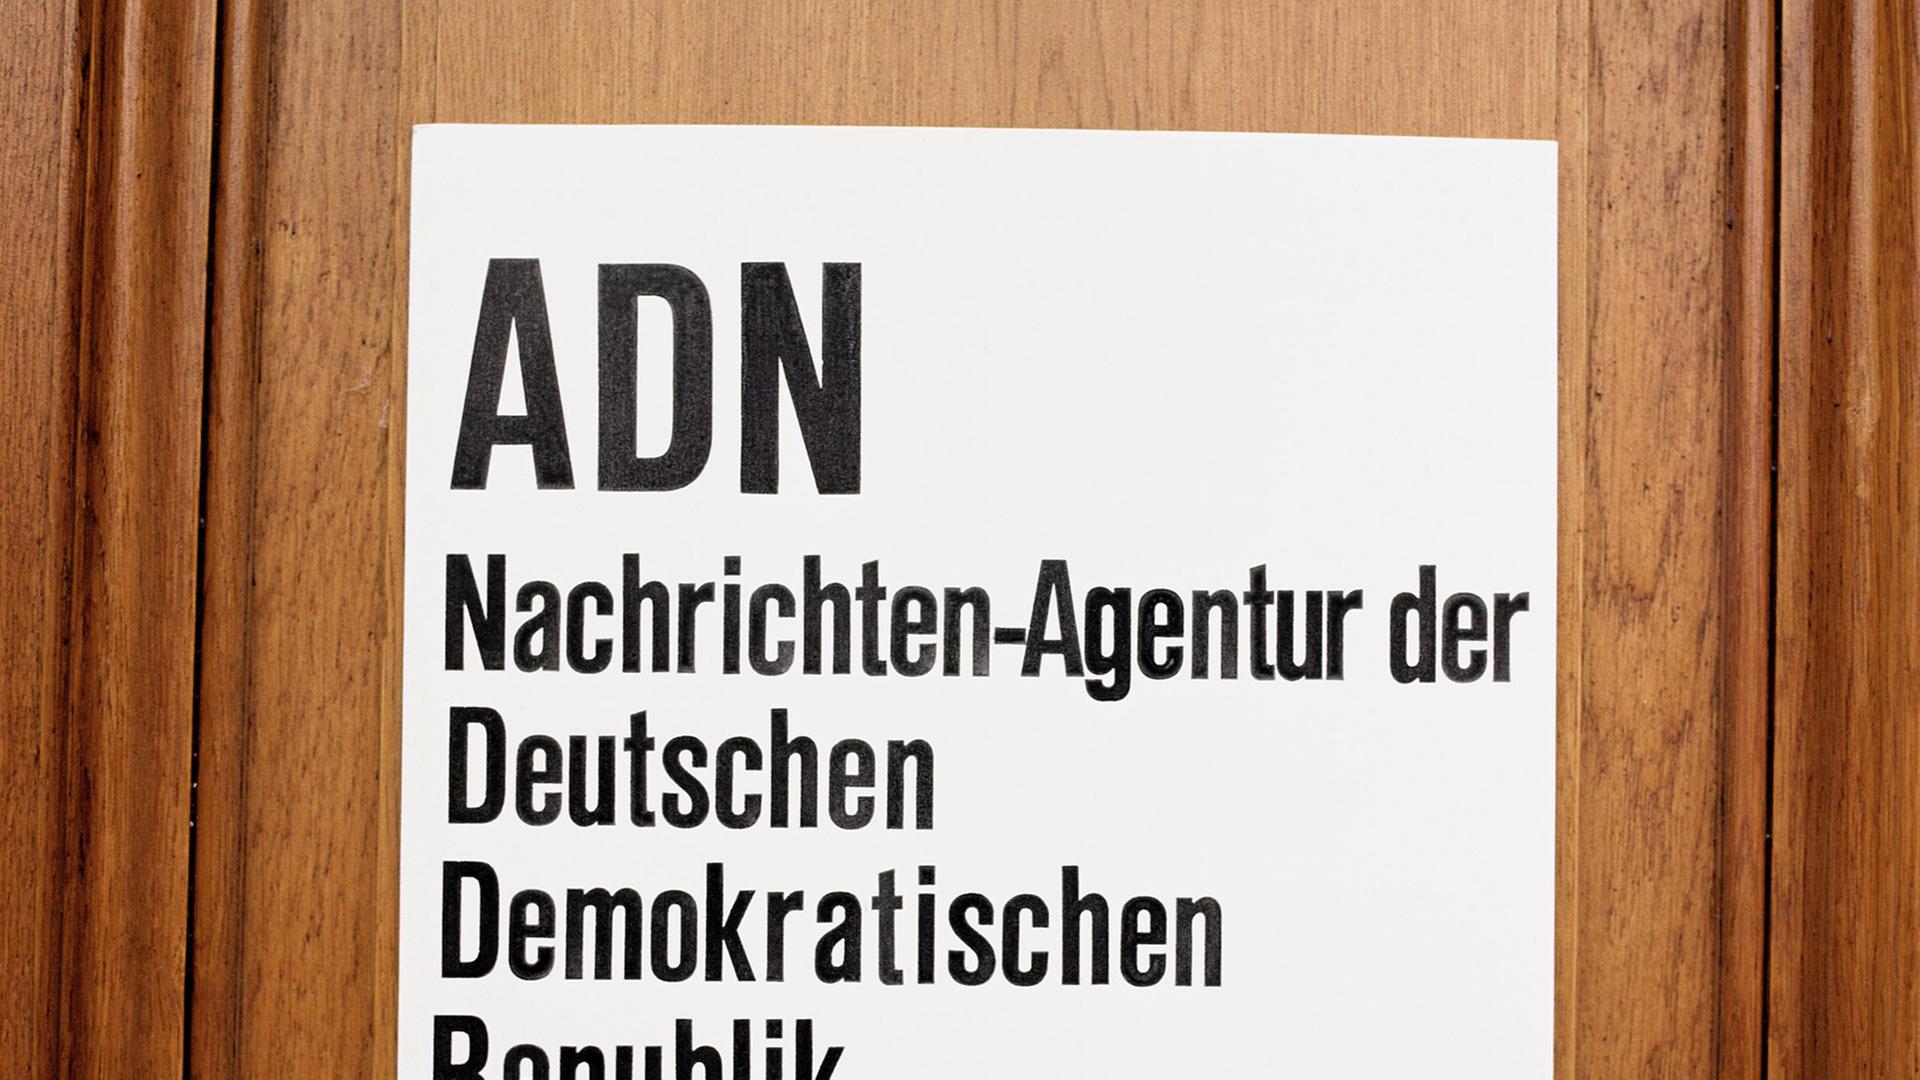 Das Schild: ADN Nachrichten-Agentur der Deutschen Demokratischen Republik ist zu sehen